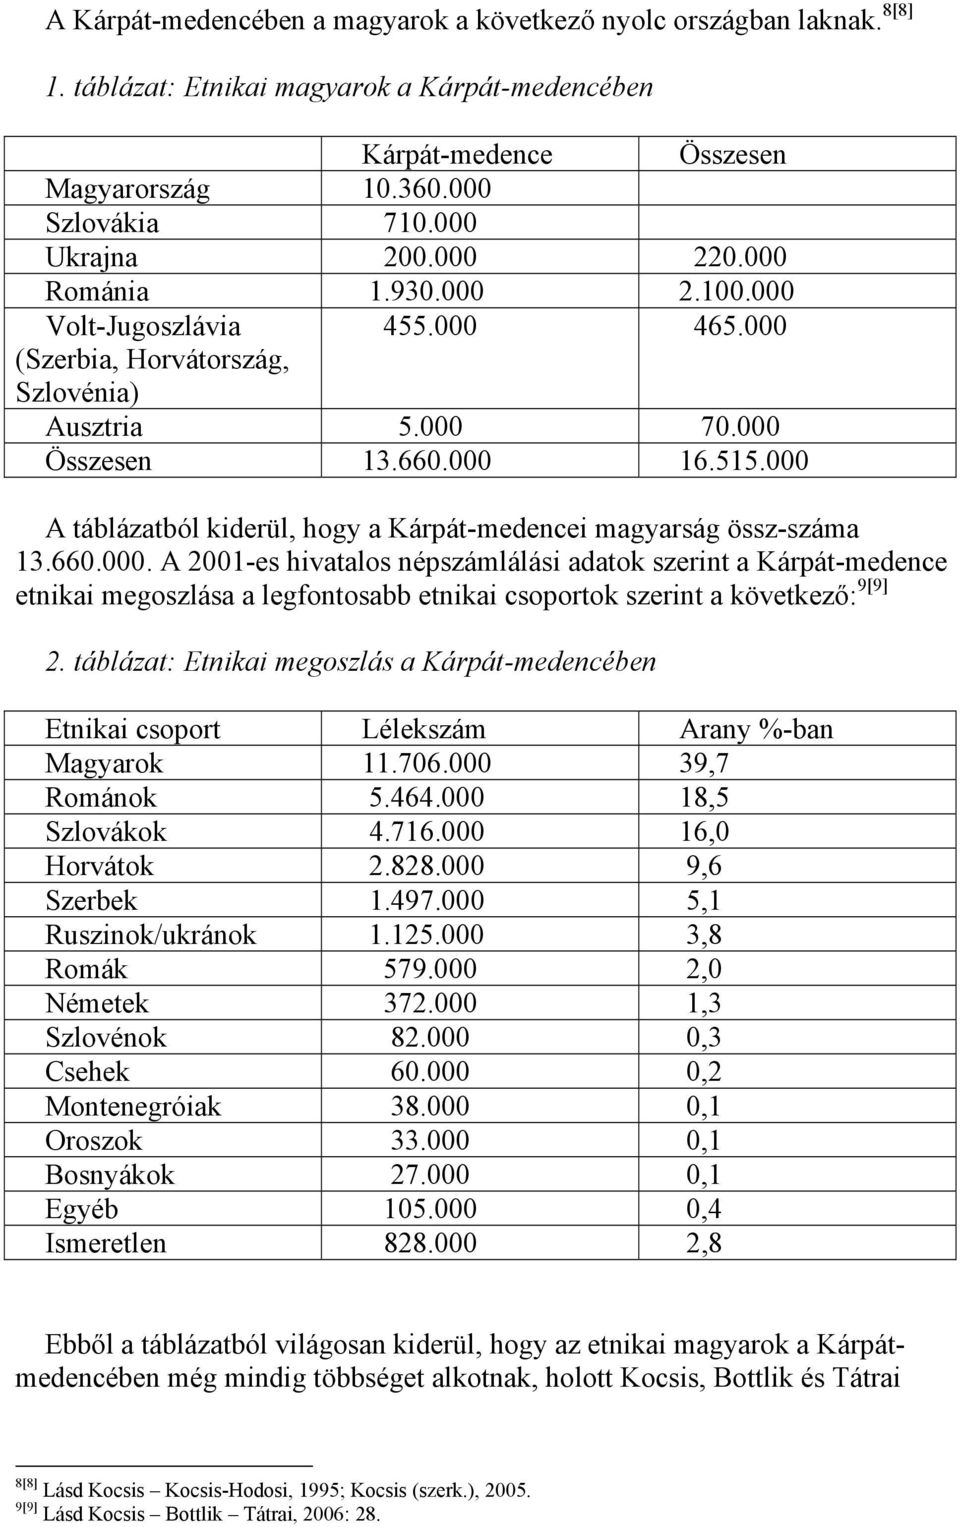 000 A táblázatból kiderül, hogy a Kárpát-medencei magyarság össz-száma 13.660.000. A 2001-es hivatalos népszámlálási adatok szerint a Kárpát-medence etnikai megoszlása a legfontosabb etnikai csoportok szerint a következő: 9[9] 2.